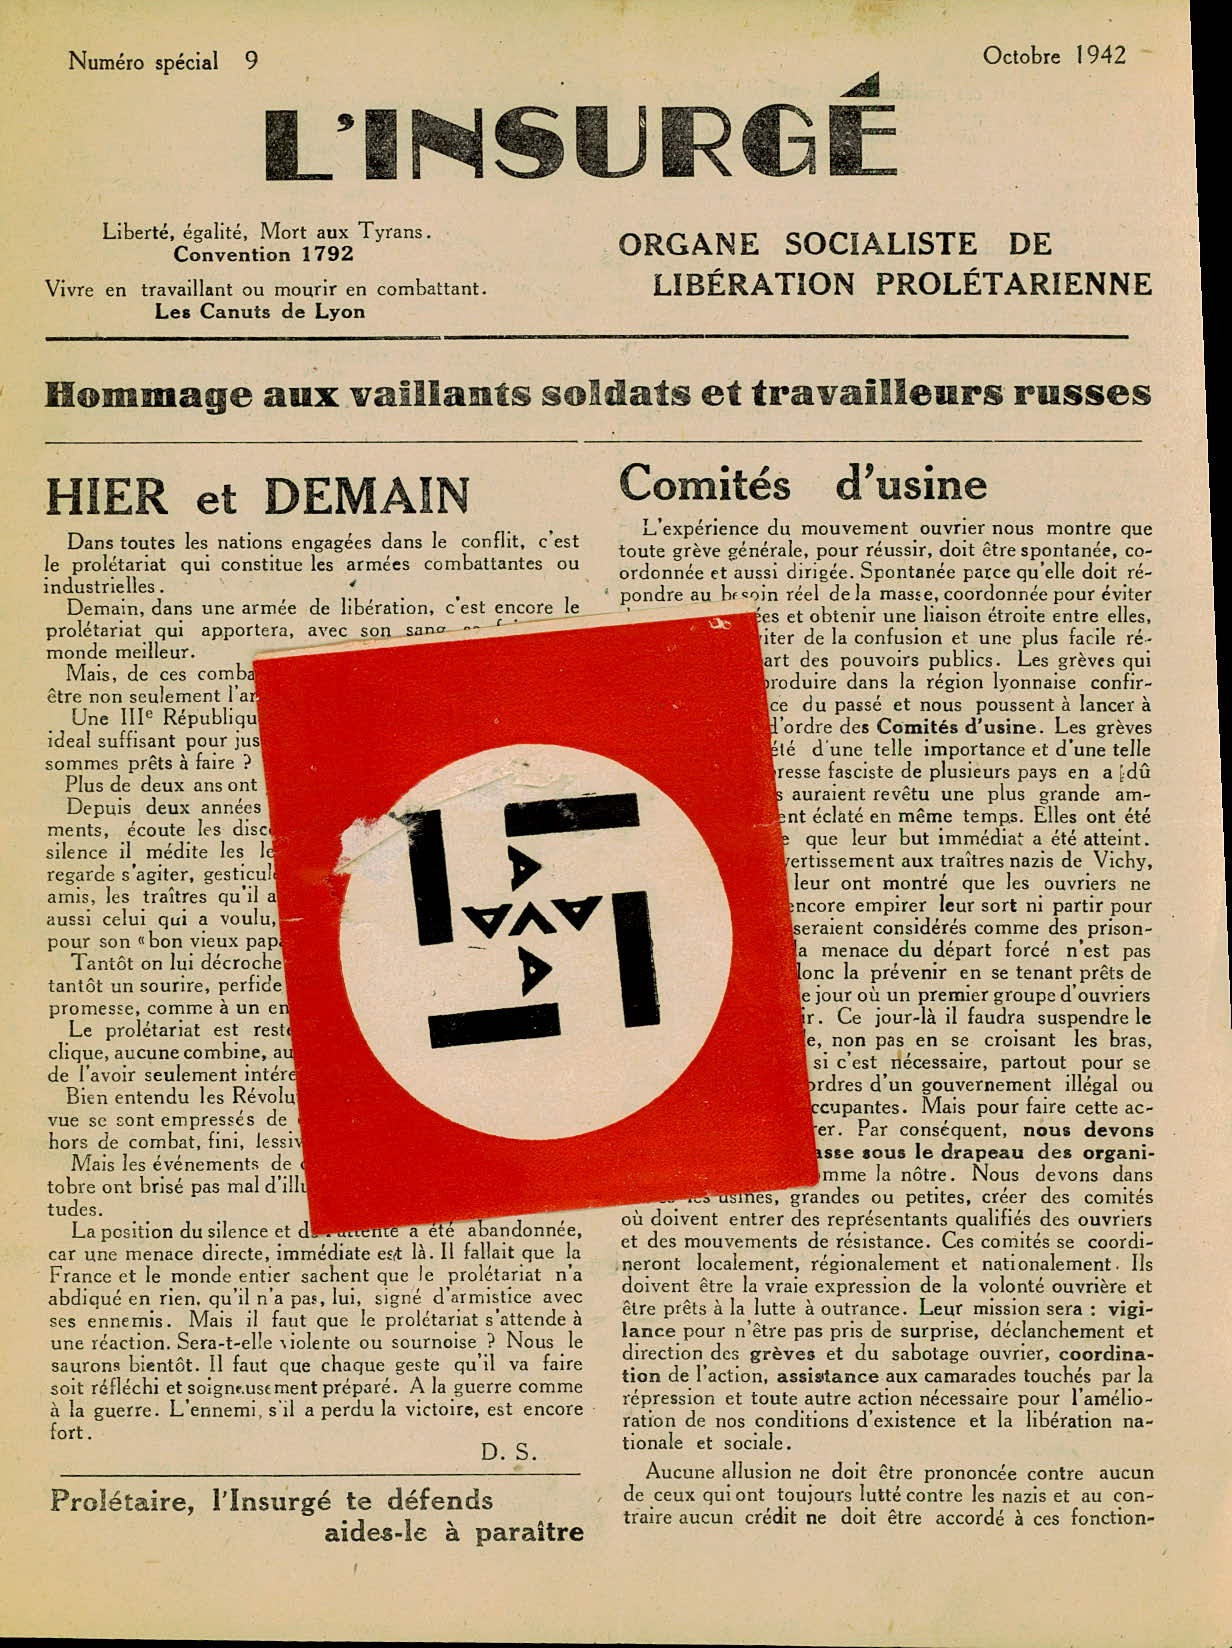 Linsurgé-publication-clandestine-Lyon-octobre-1942.jpg